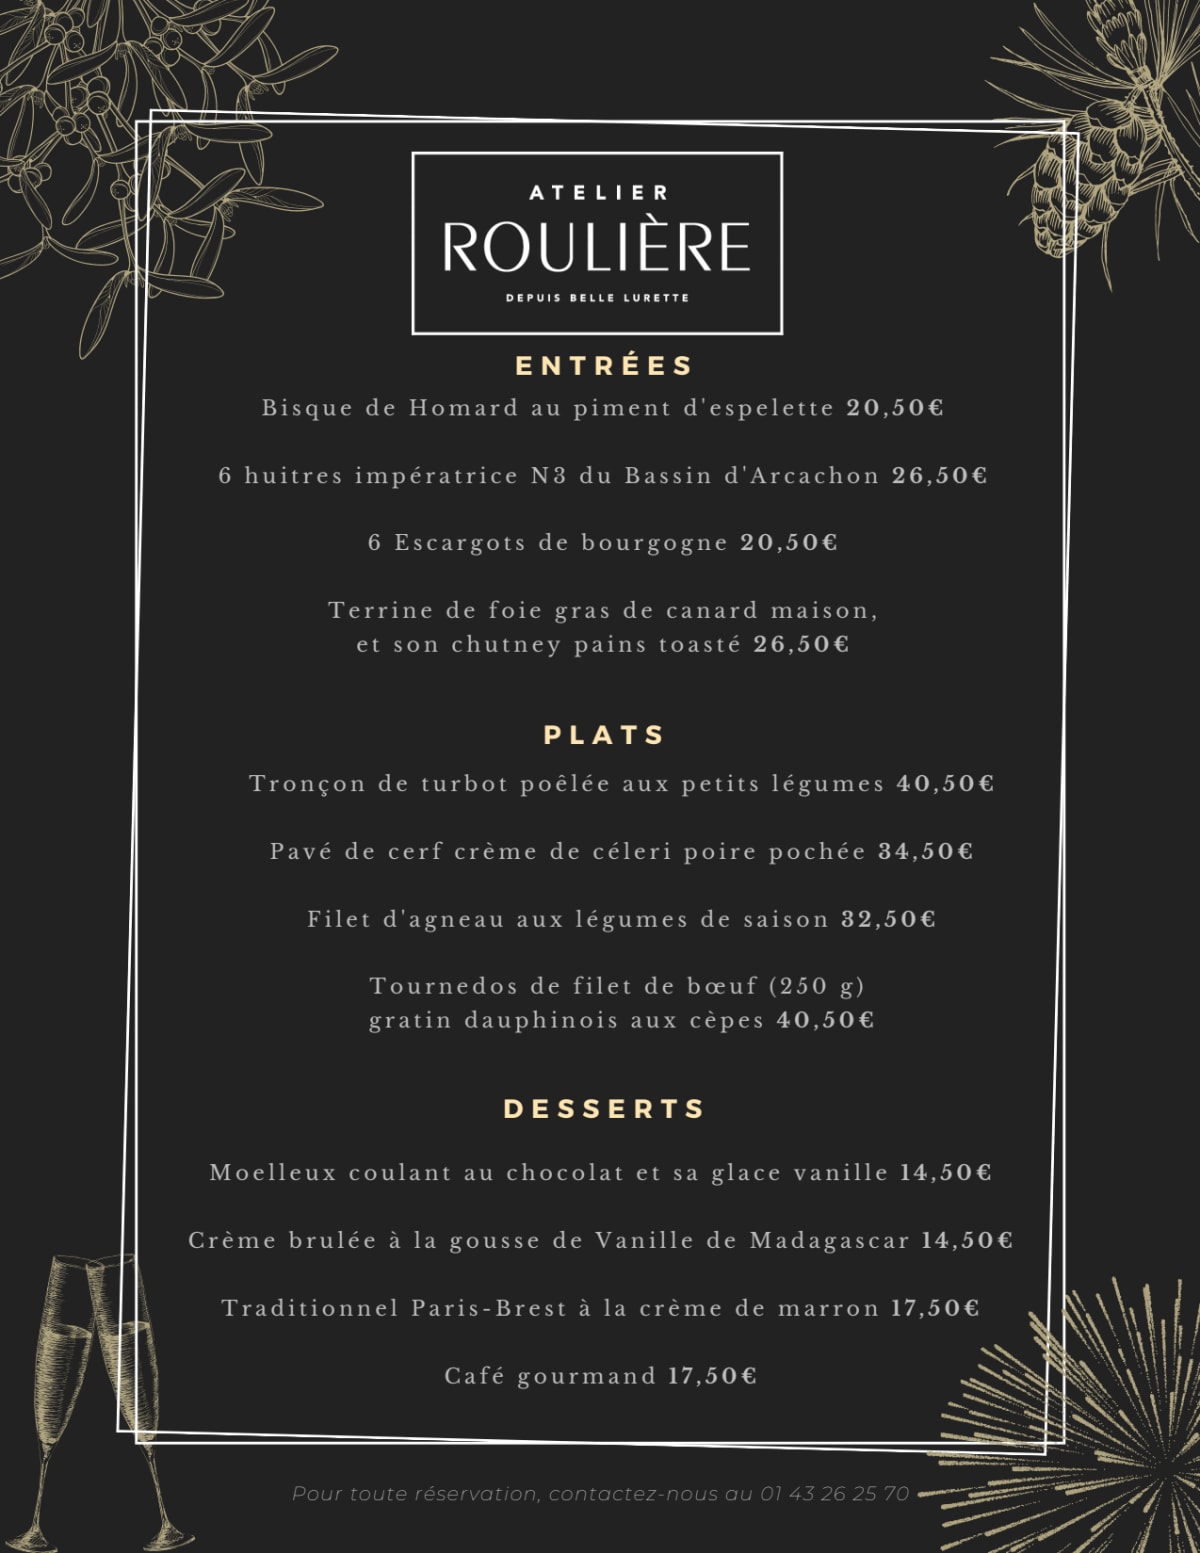 Atelier Roulière menu